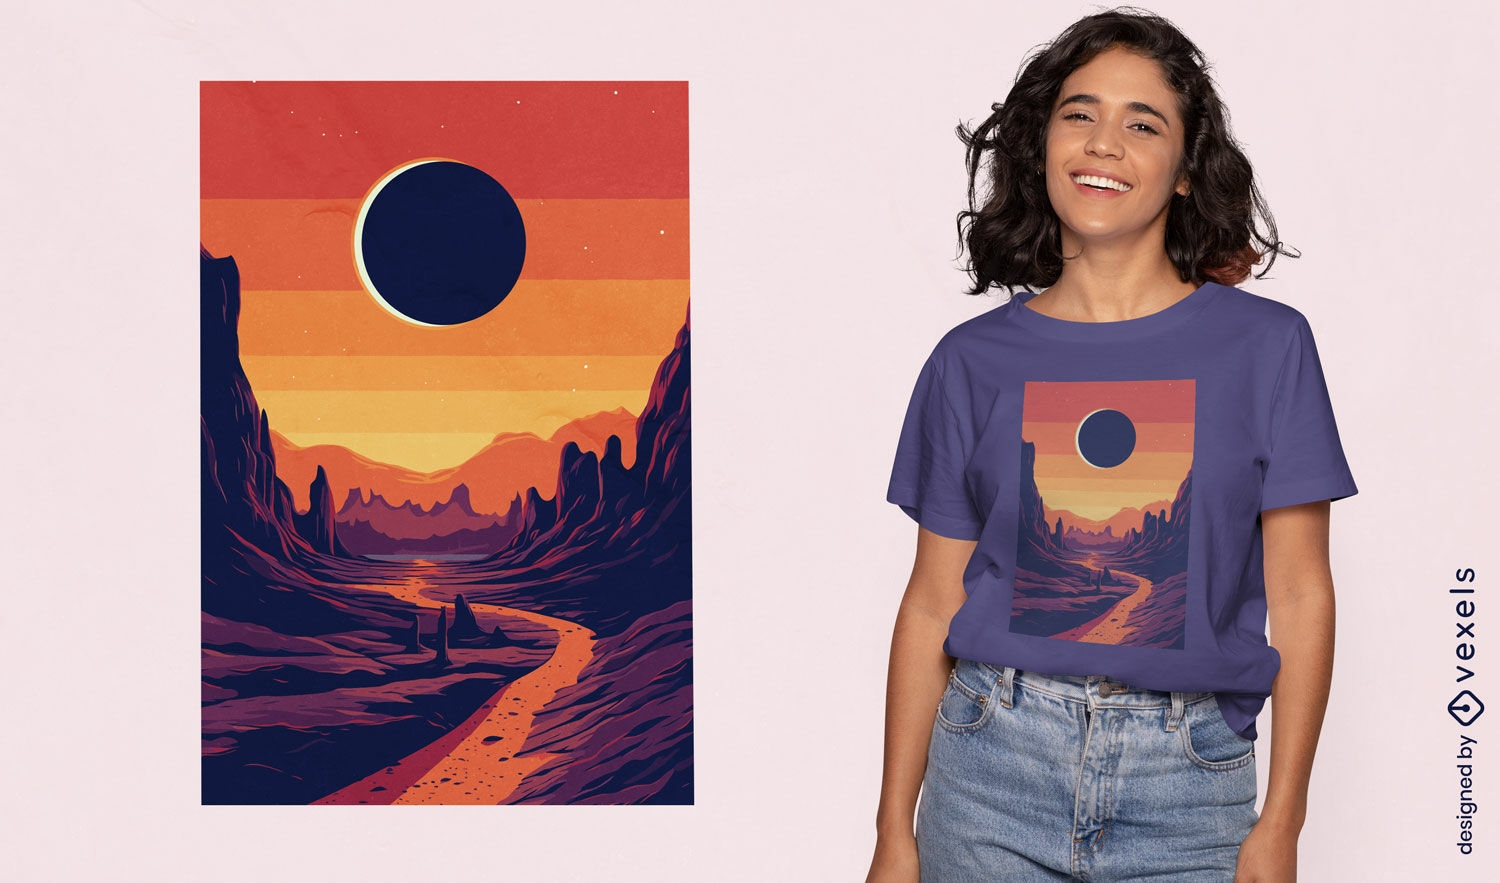 Sunset eclipse t-shirt design